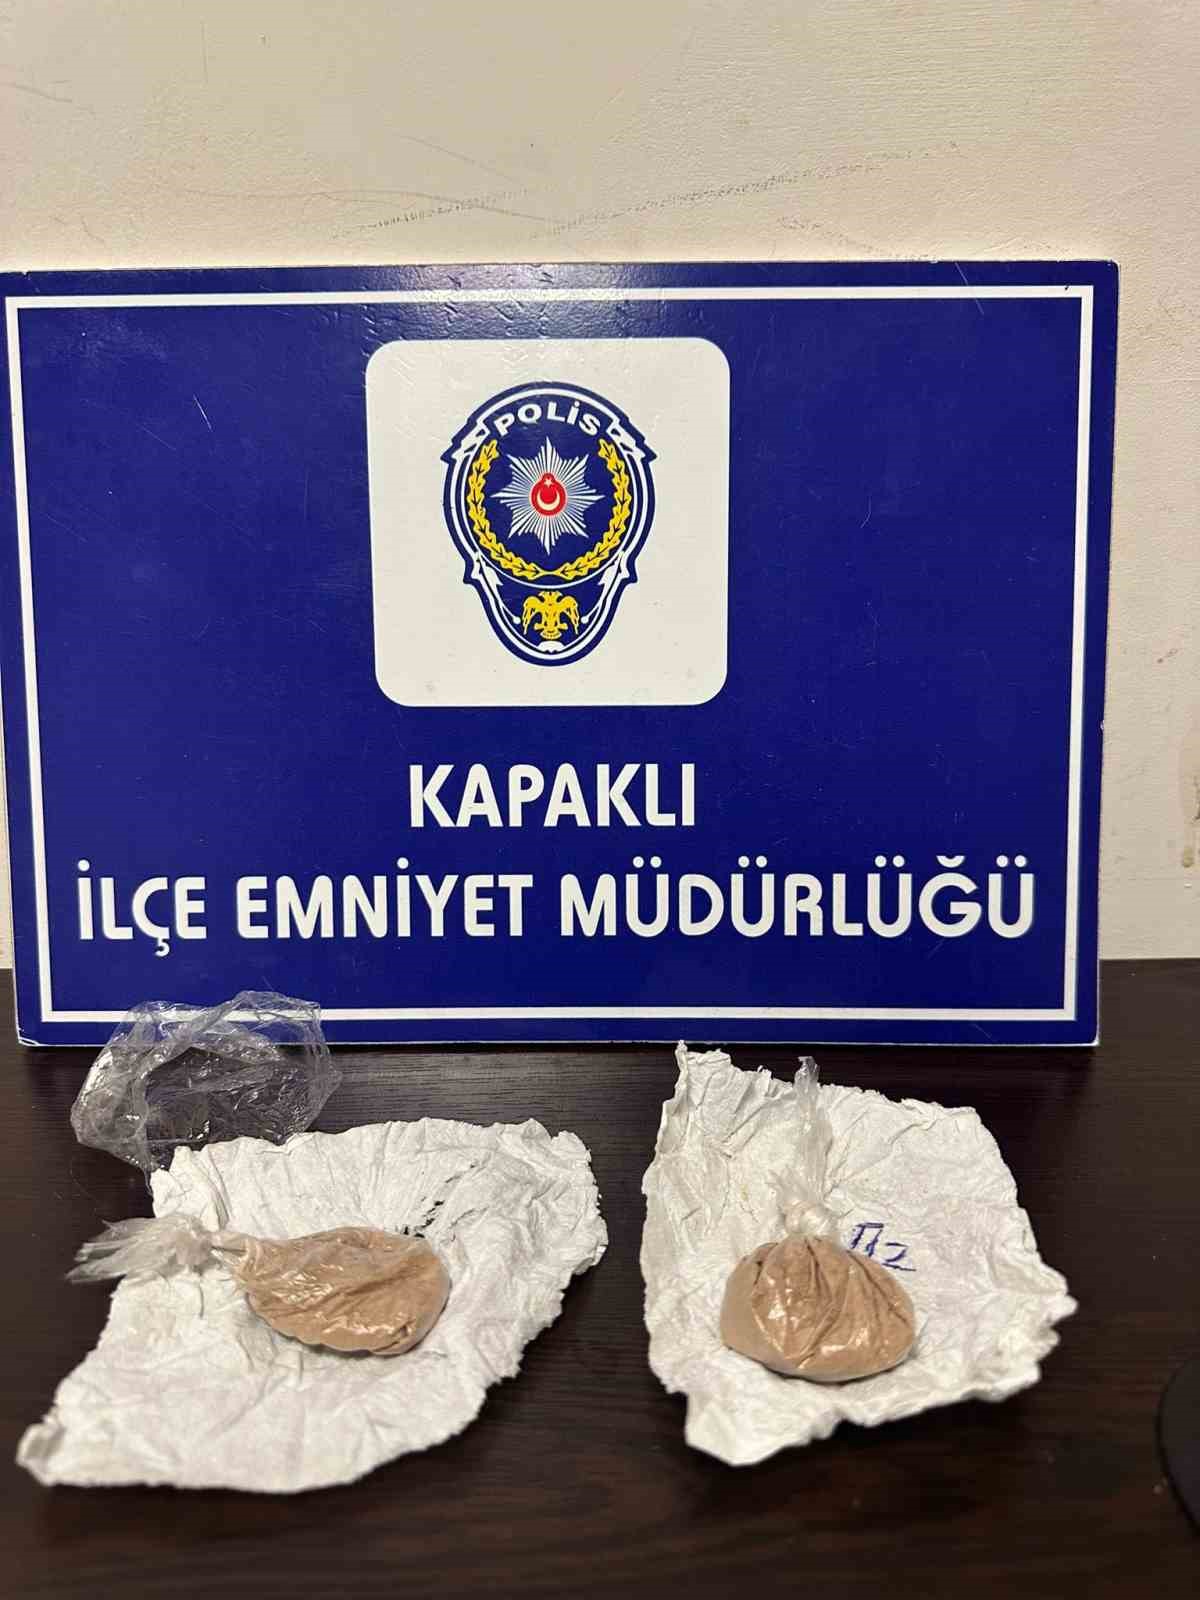 İstanbuldan Kapaklıya Uyuşturucu Getiren Şahıslar Yakalandı